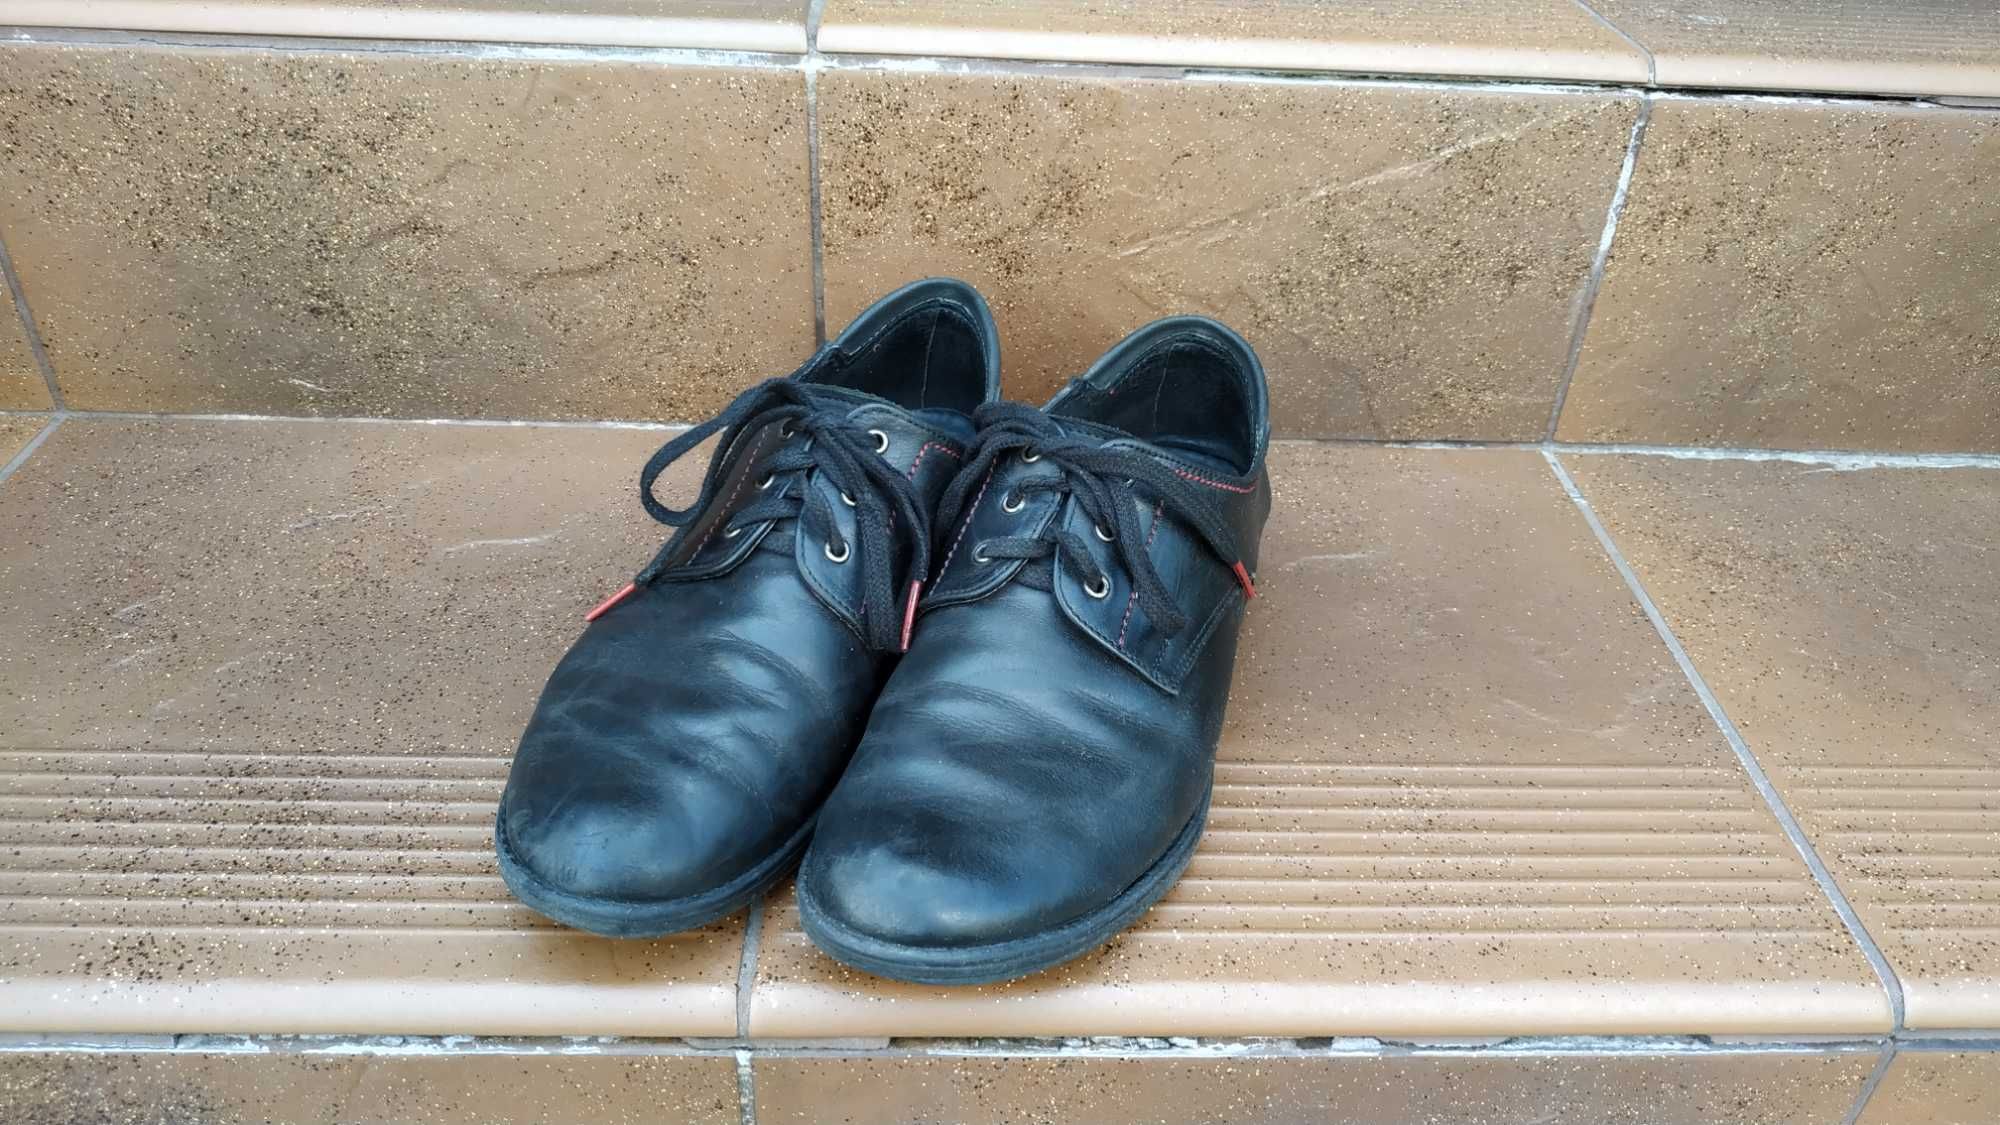 Buty skórzane od szewca, czarne, rozmiar 38